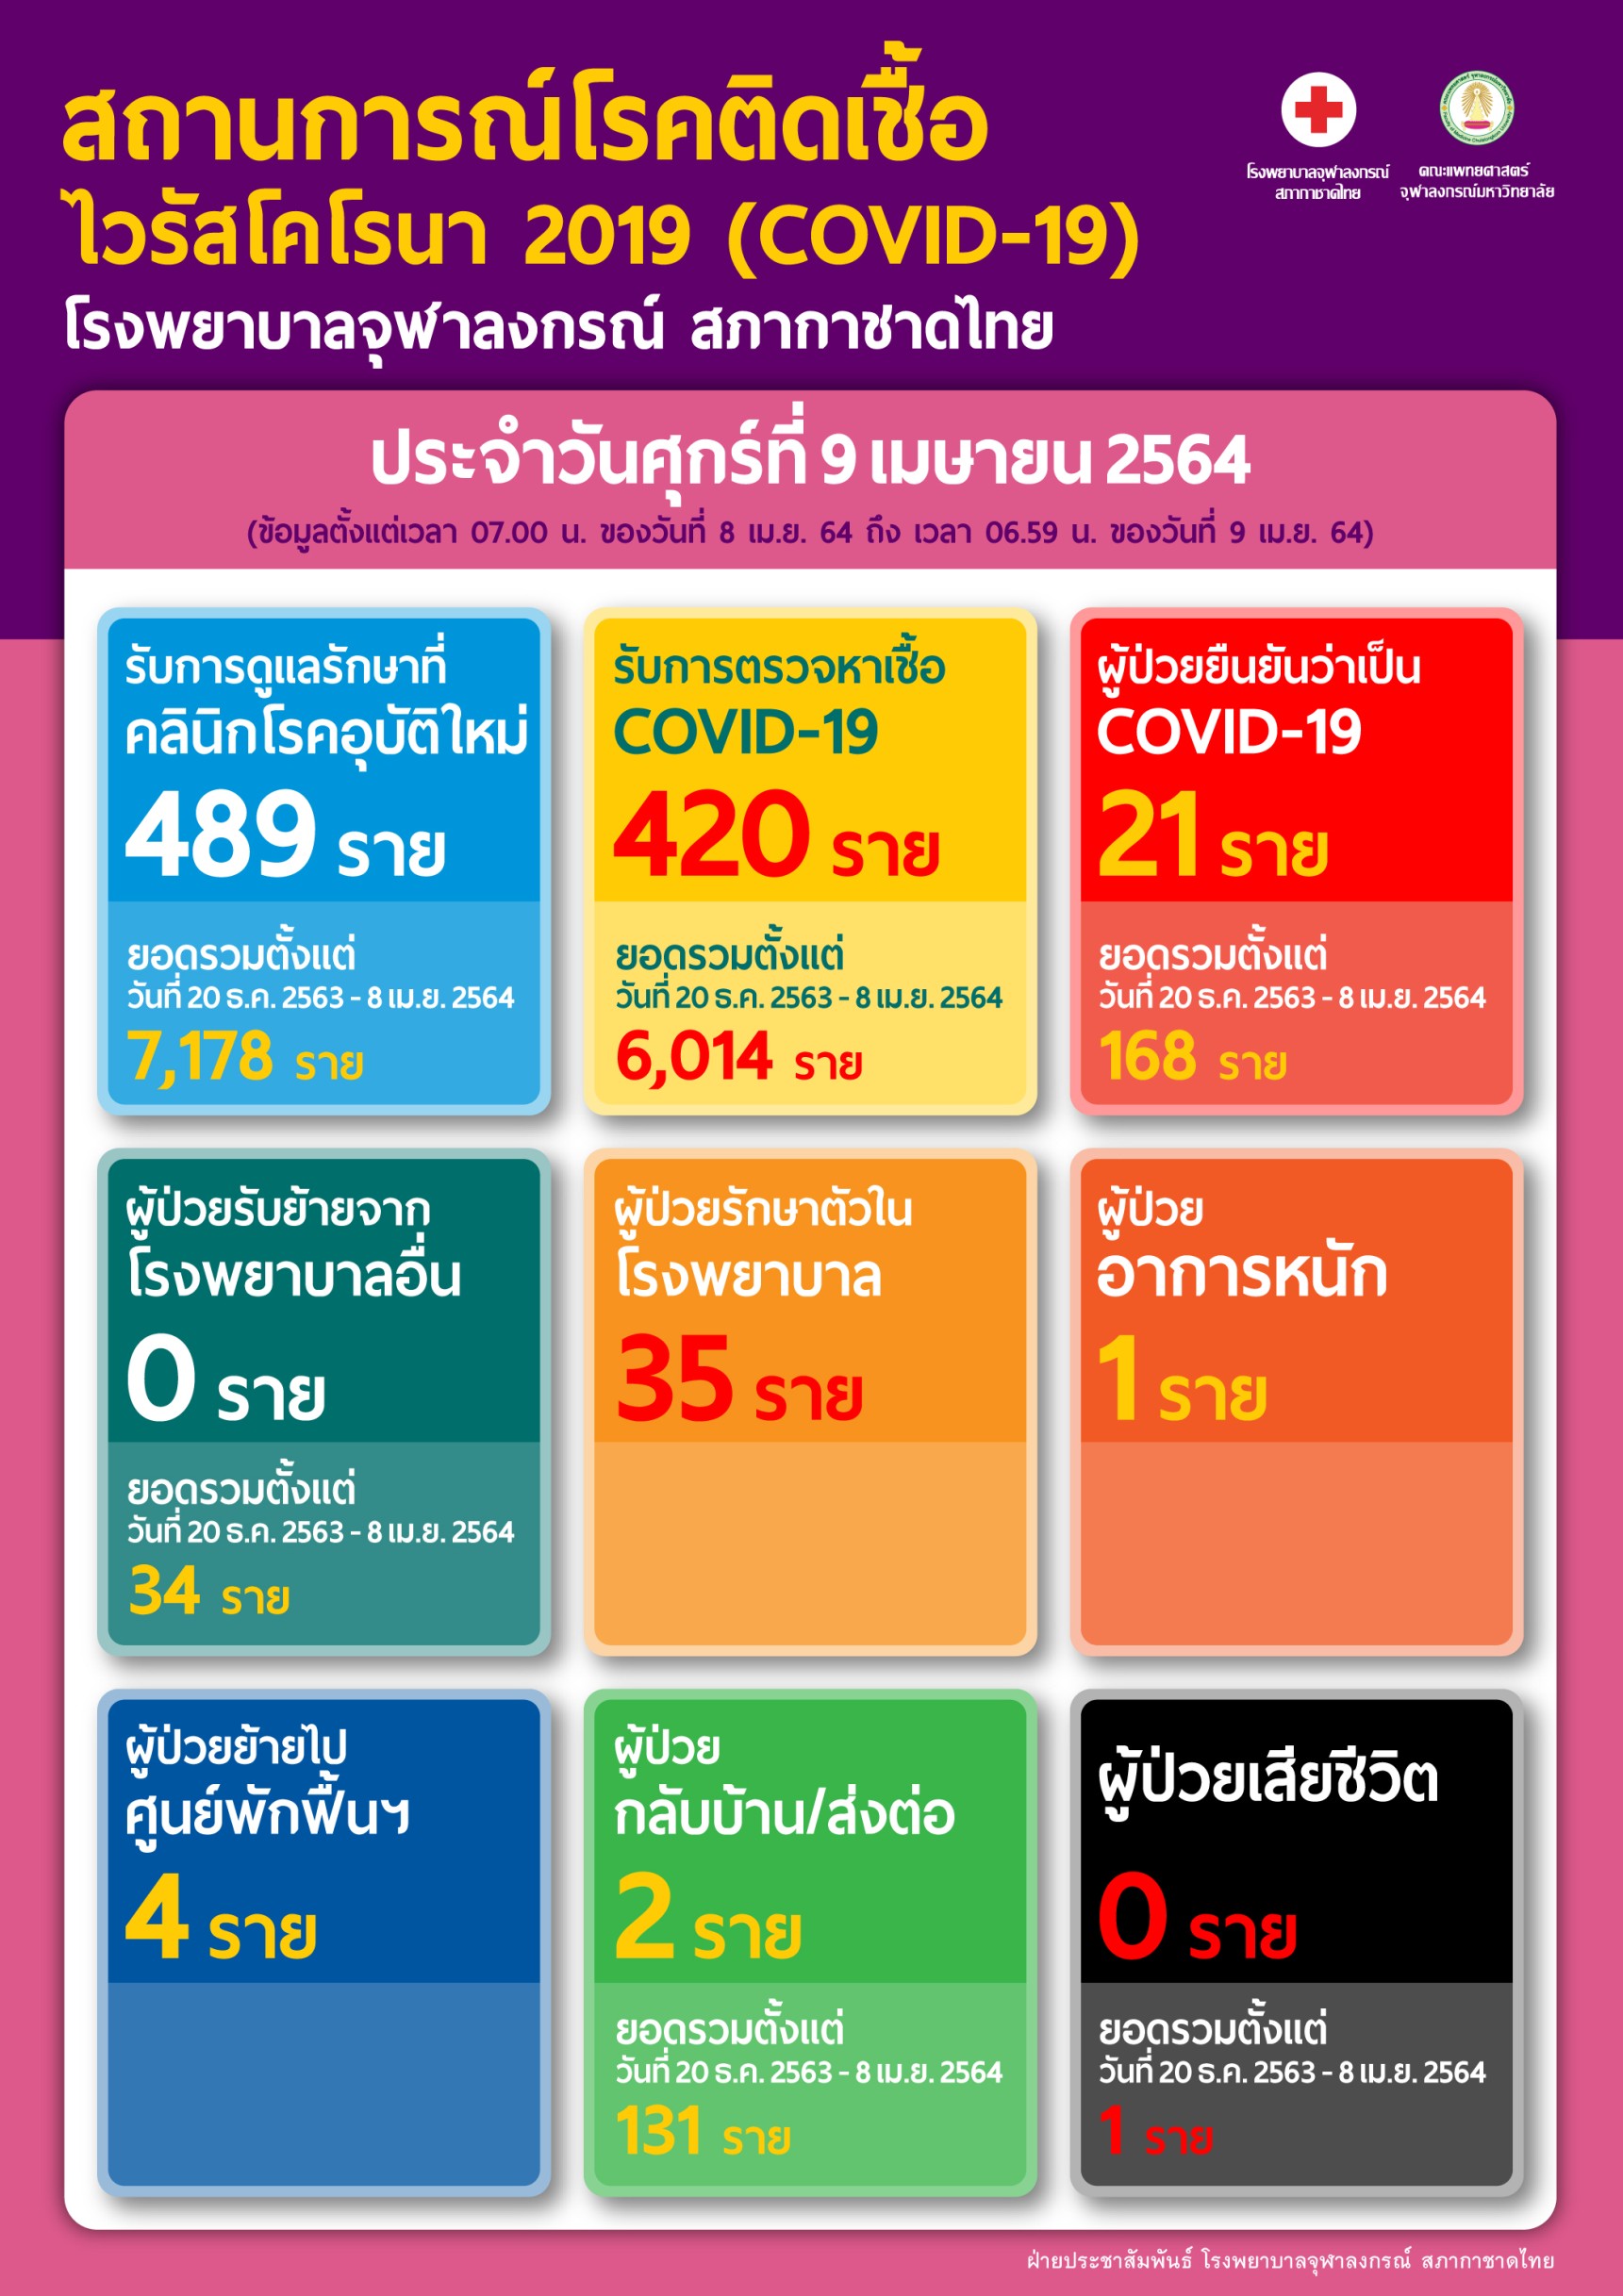 สถานการณ์โรคติดเชื้อ ไวรัสโคโรนา 2019 (COVID-19) โรงพยาบาลจุฬาลงกรณ์ สภากาชาดไทย ประจำวันศุกร์ที่9 เมษายน 2564